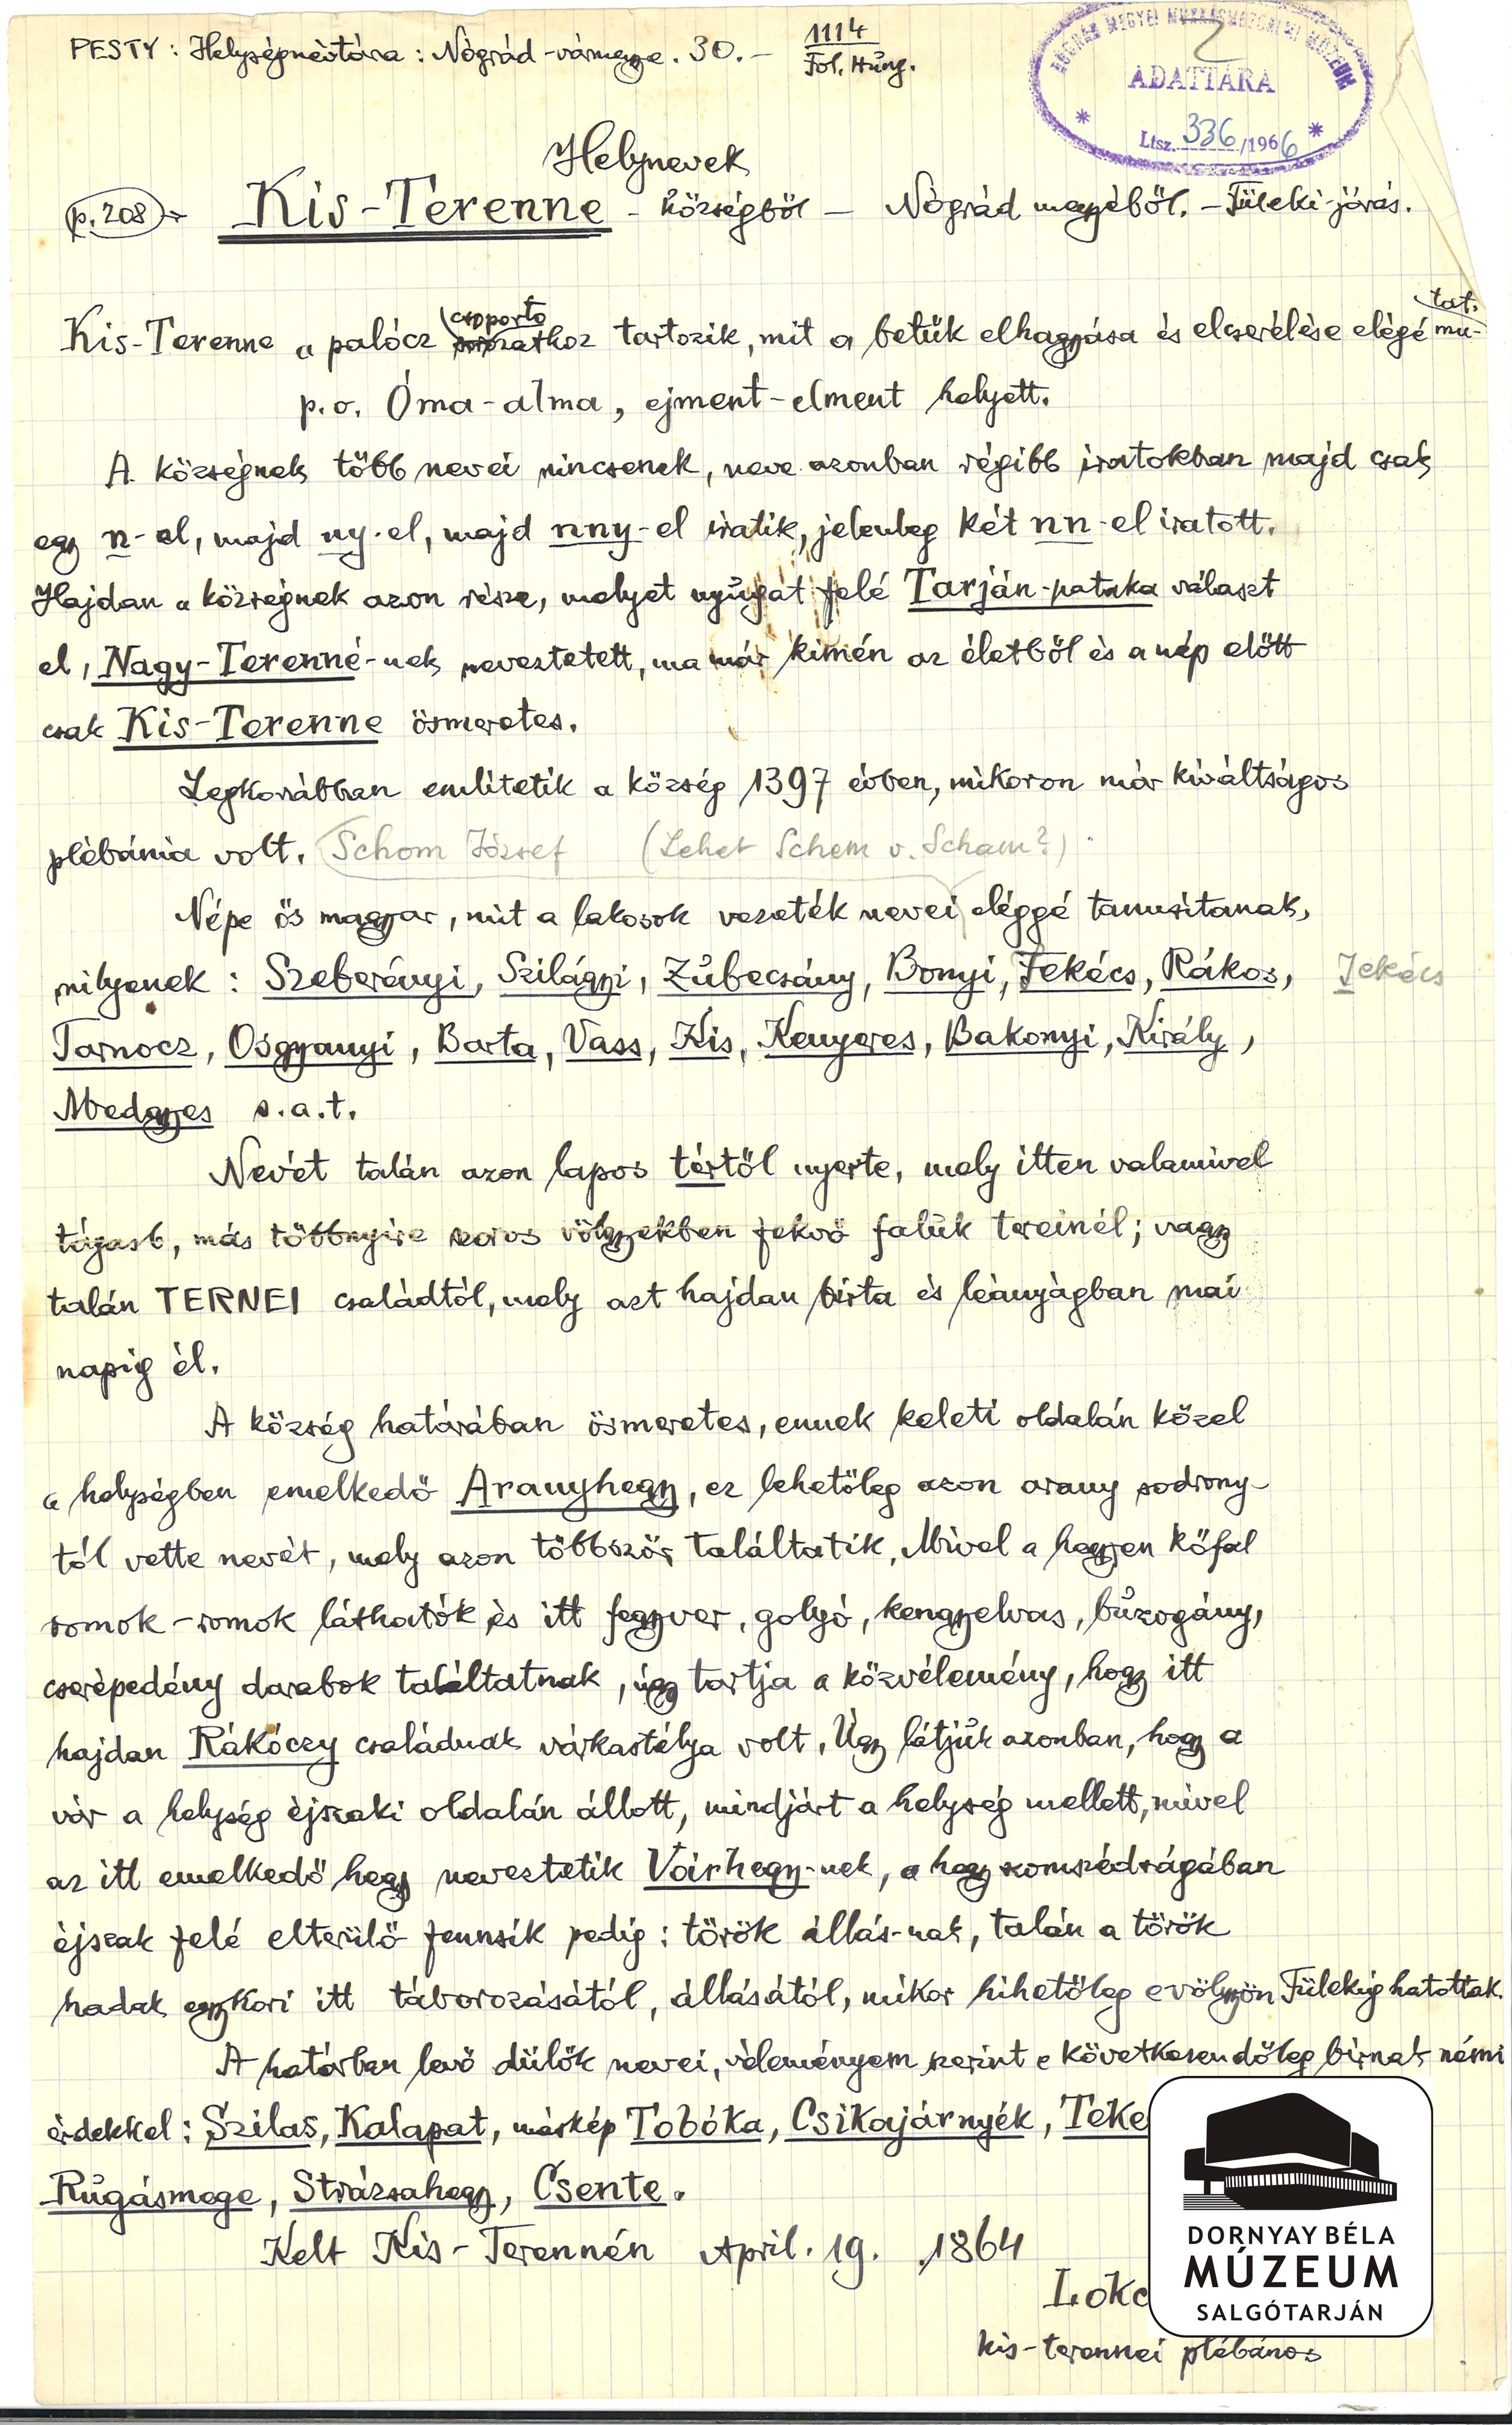 Dr. Dornyay Béla kézirat másolata a Pesty-féle gyűjtésből,Kisterenye (Dornyay Béla Múzeum, Salgótarján CC BY-NC-SA)